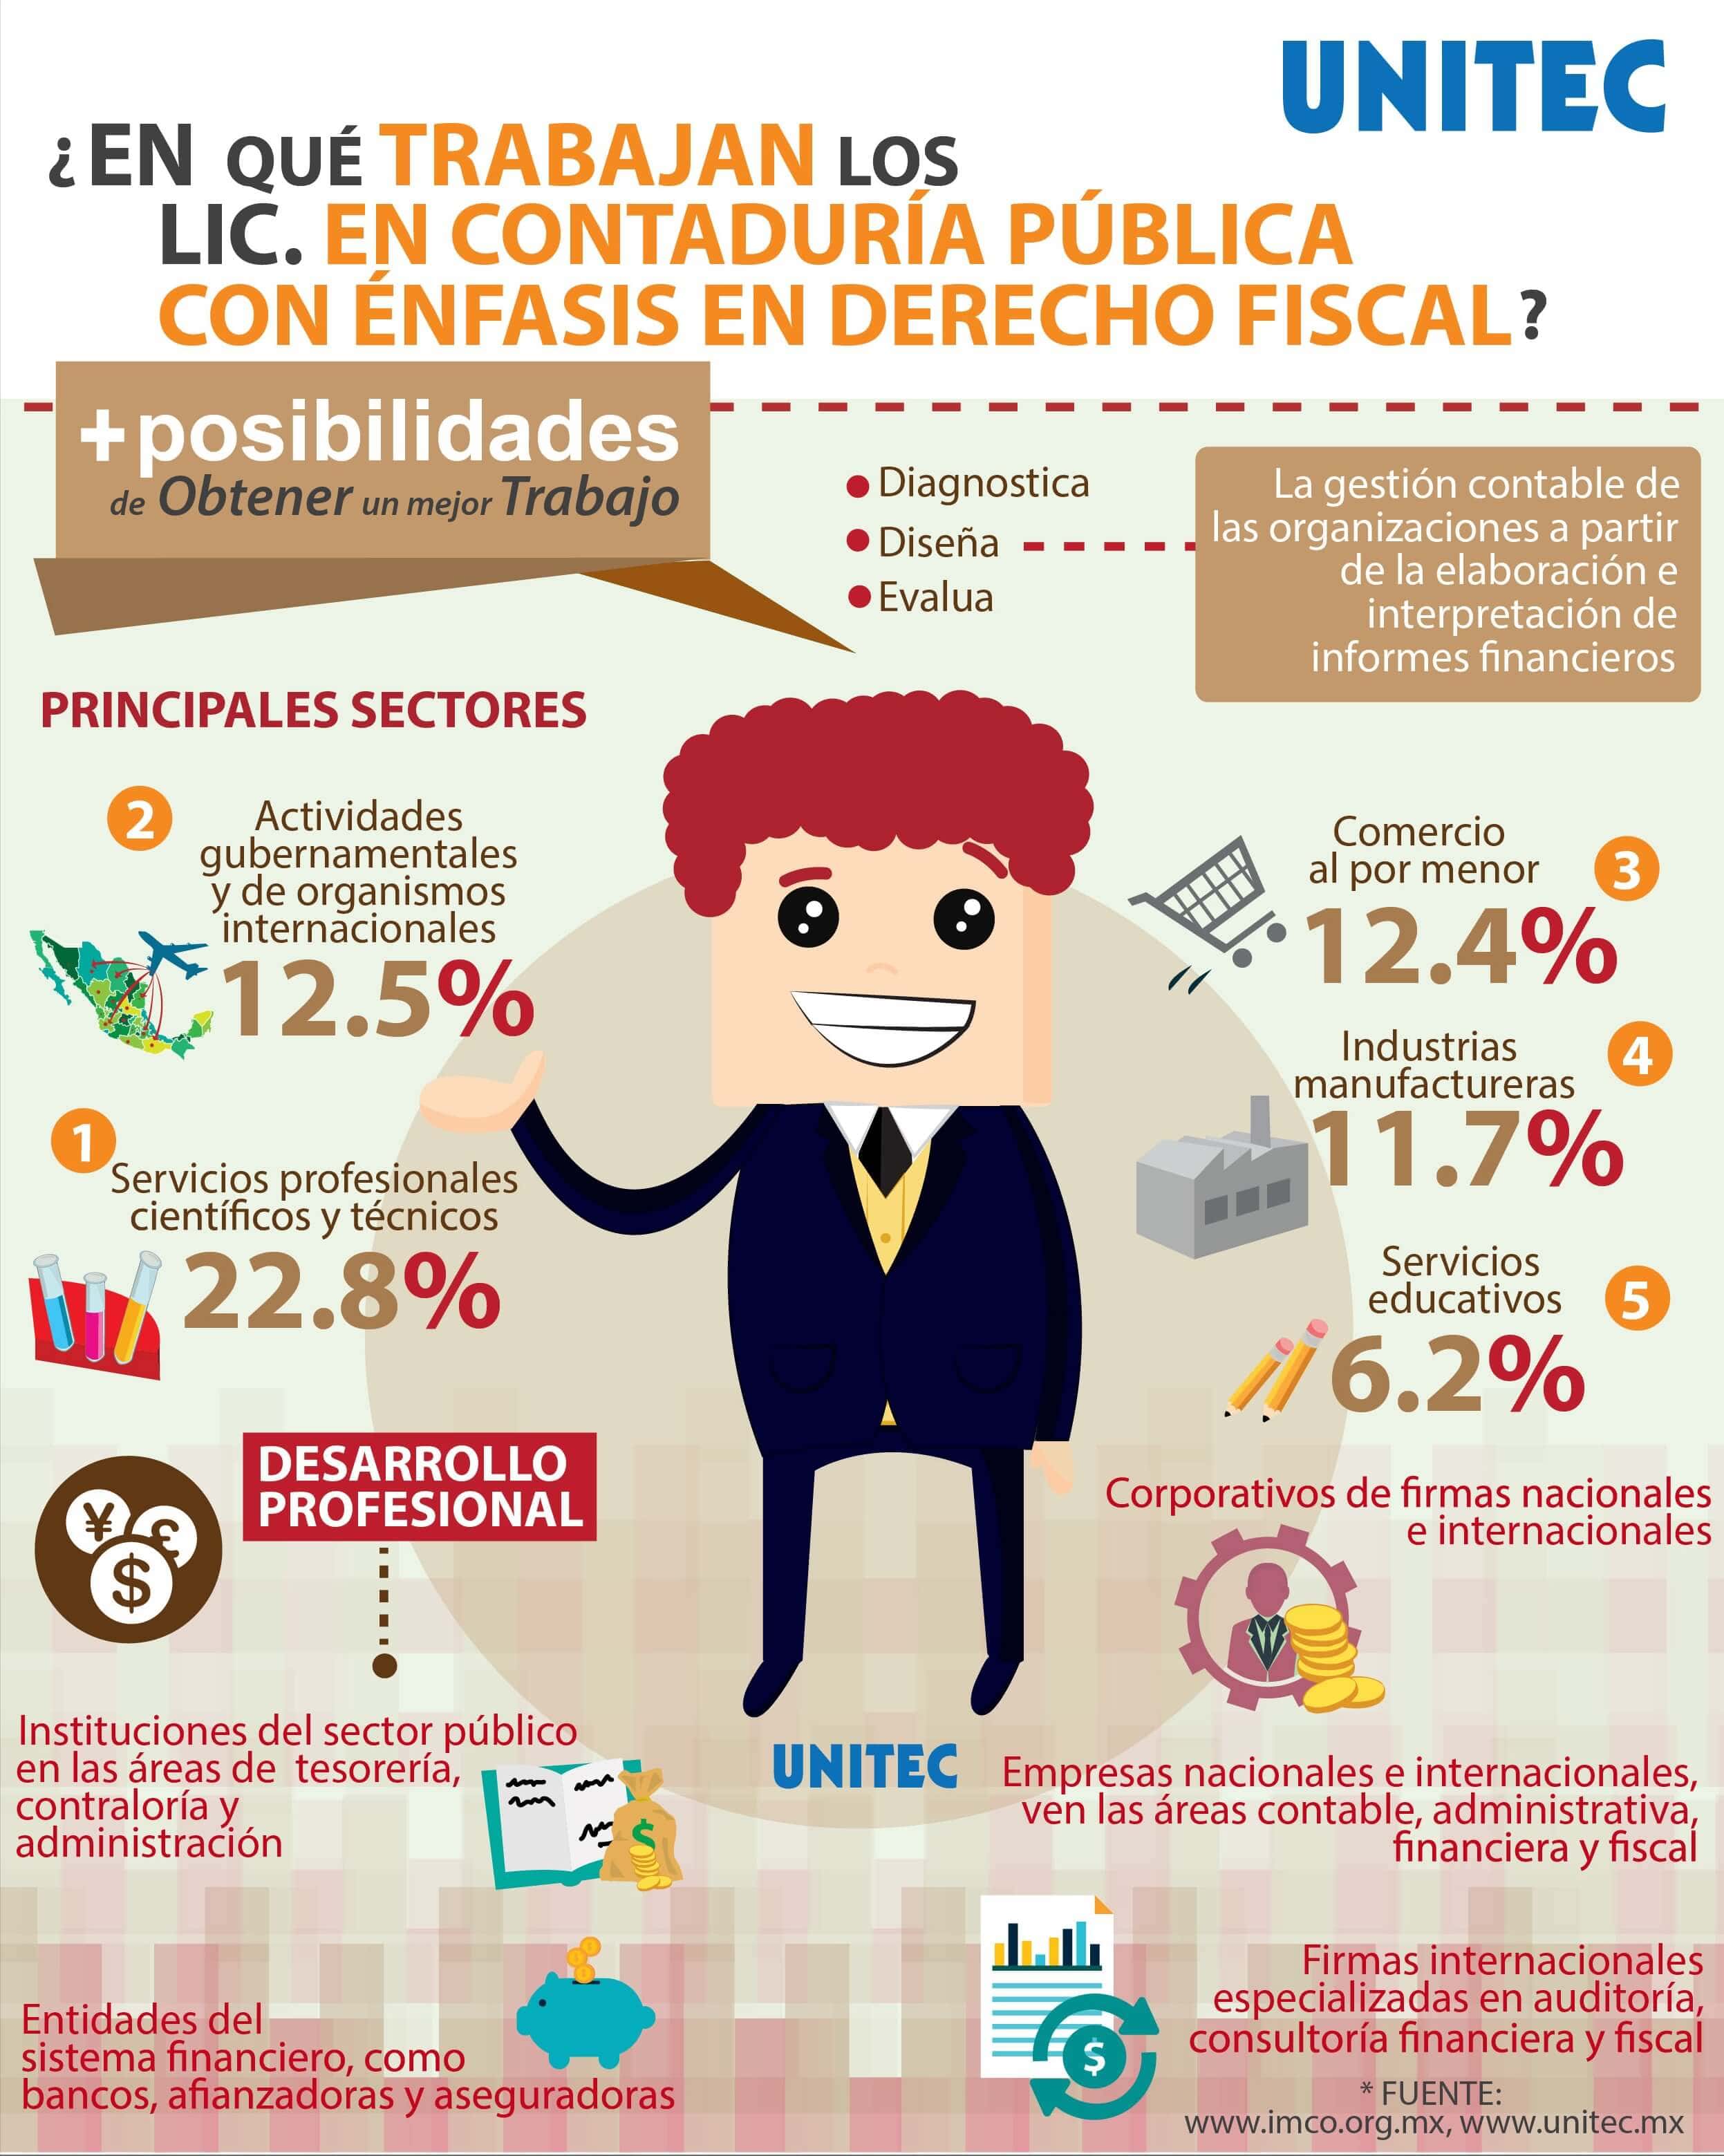 Contadura_Pblica_con_nfasis_en_Derecho_Fiscal-01.jpg